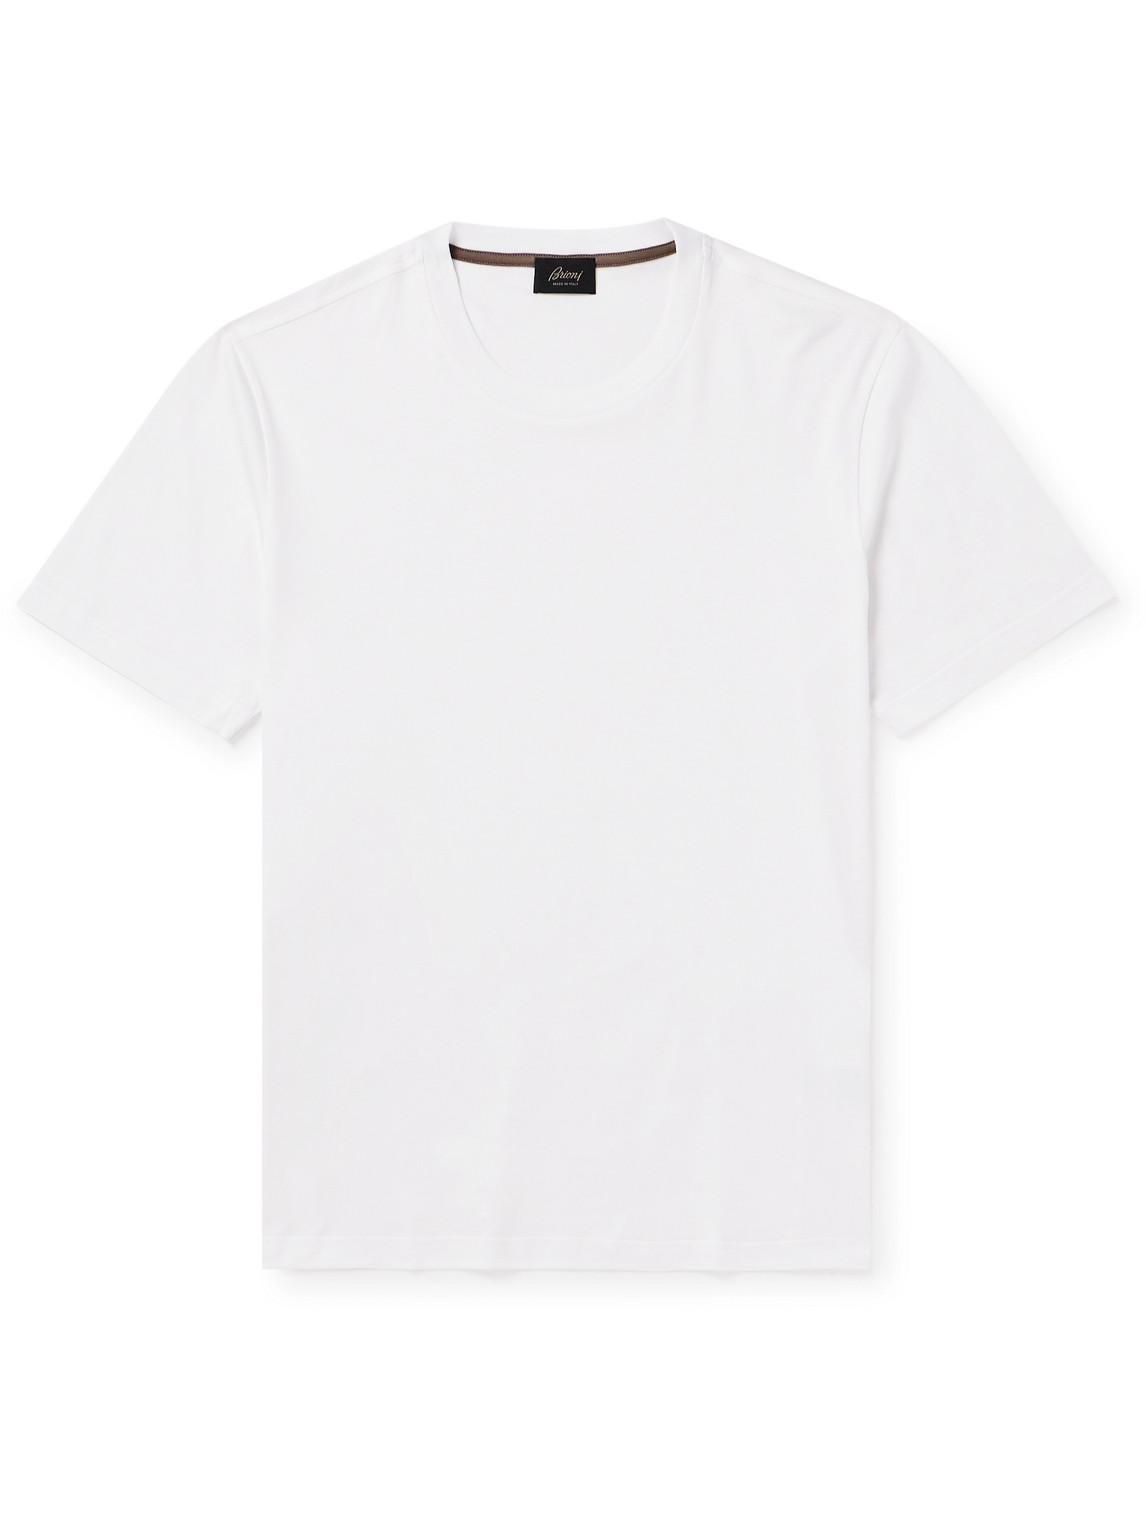 Brioni - Cotton-Jersey T-Shirt - Men - White - XXL von Brioni